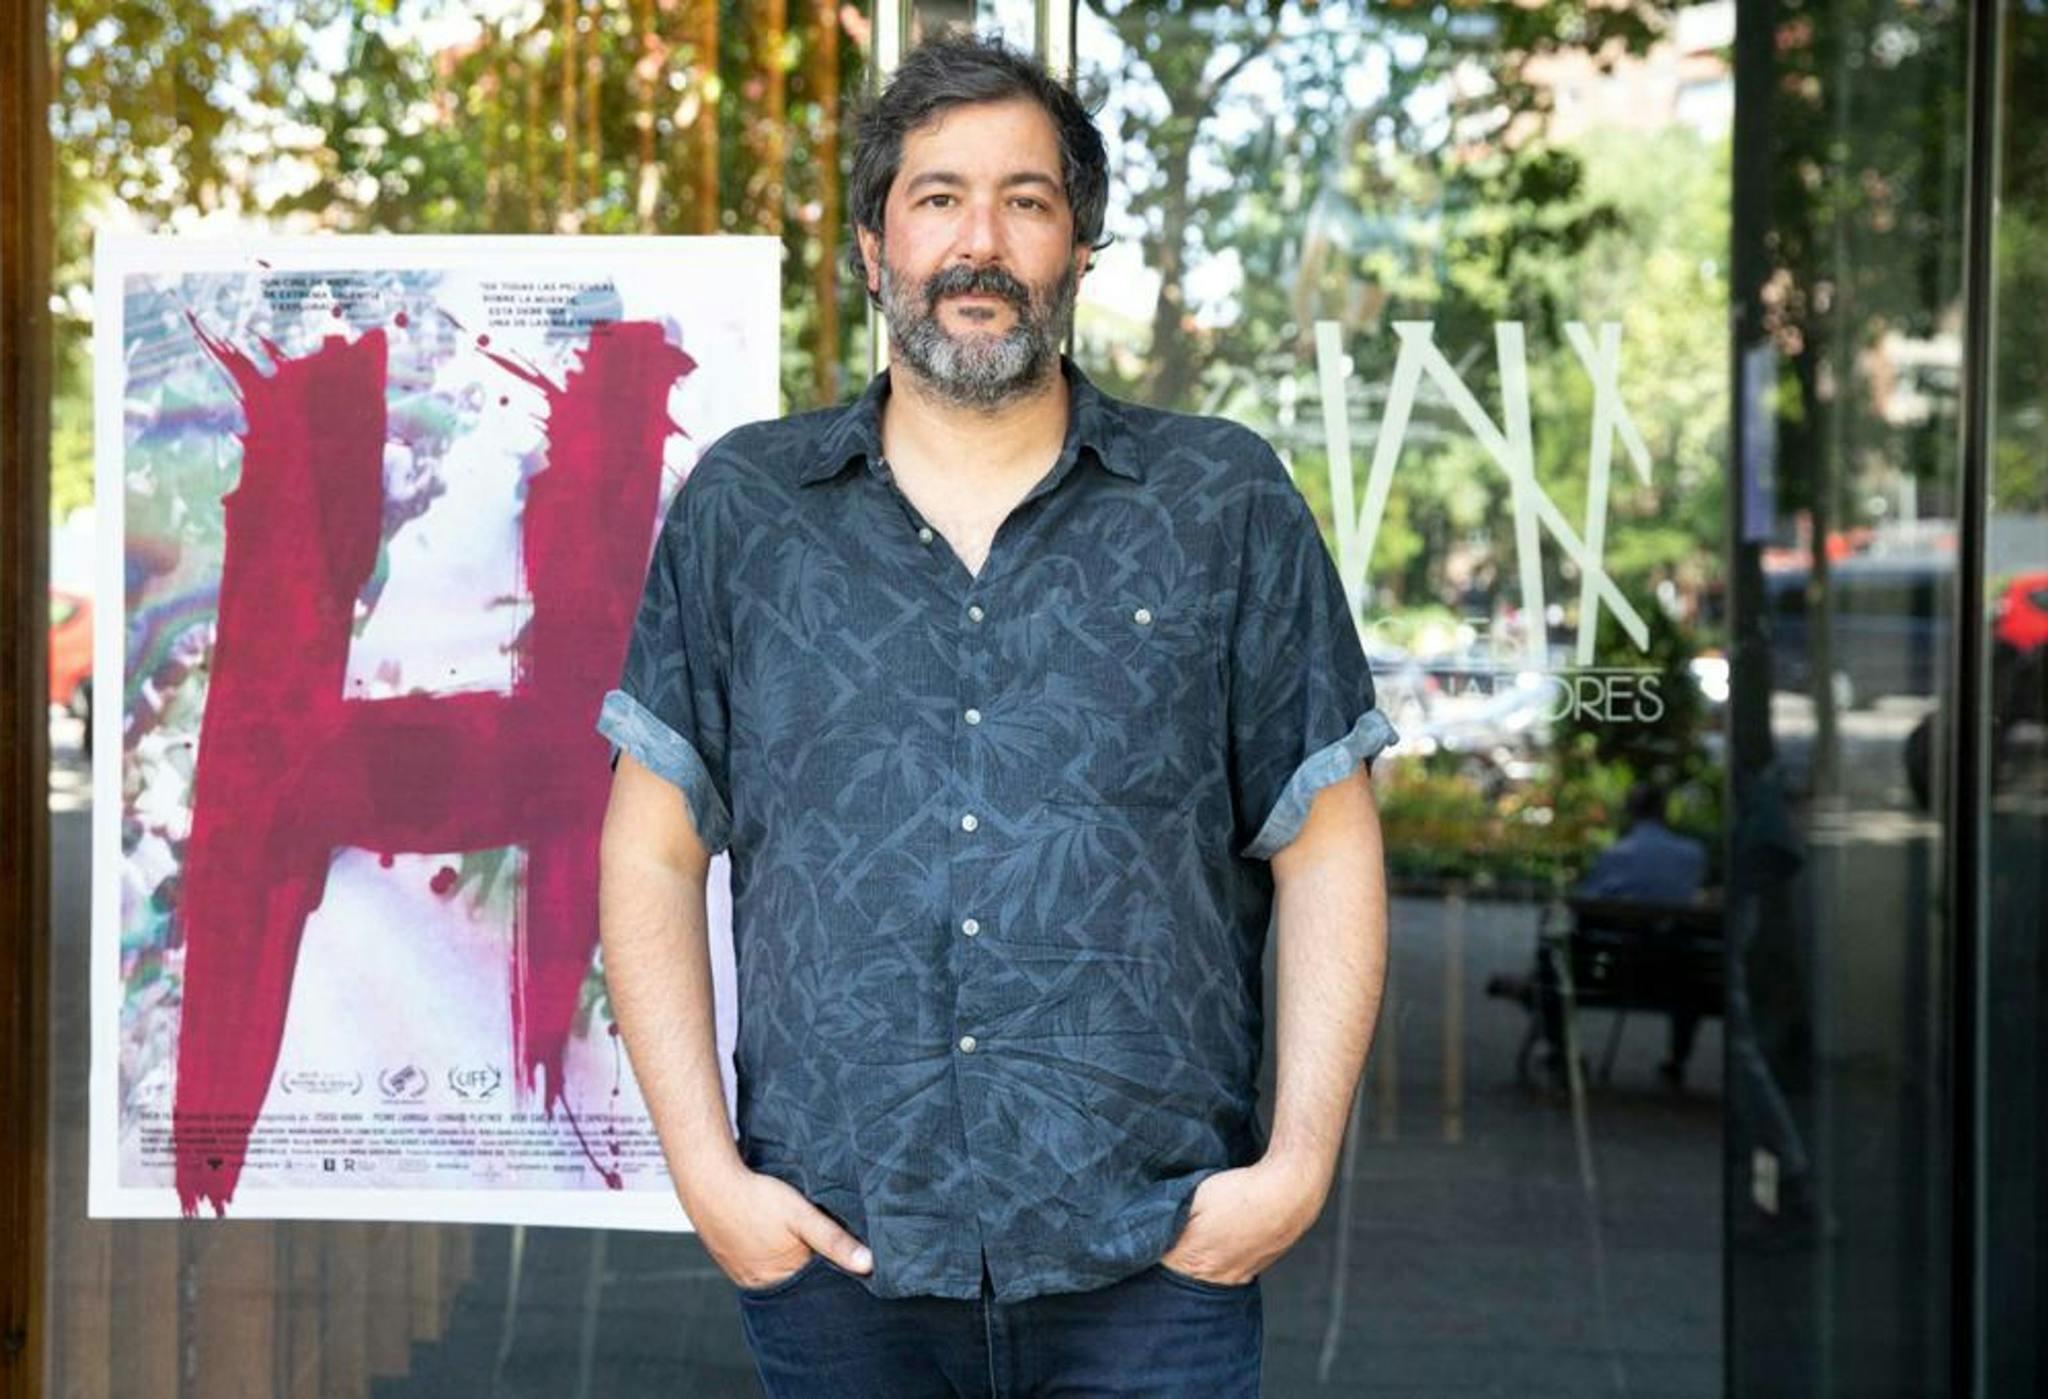 Carlos Pardo Ros ha dedicado su vida cinematográfica al trabajo colectivo